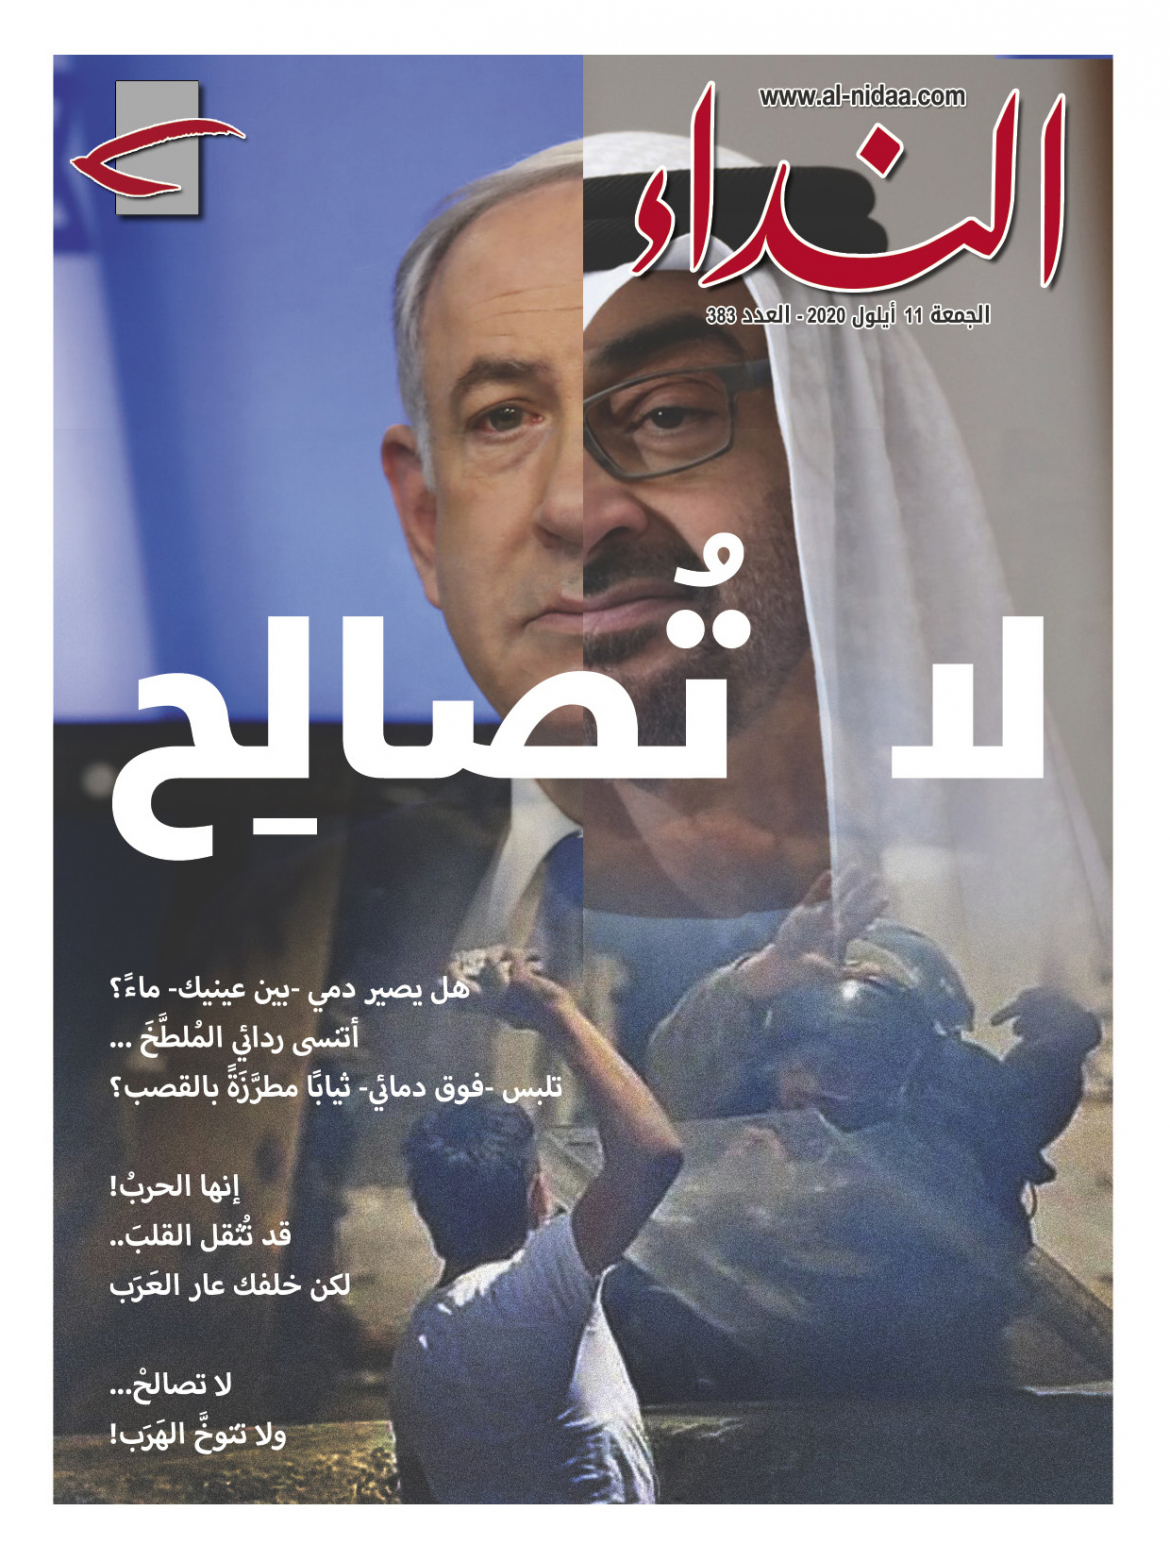 صدر العدد الجديد من مجلة النداء، بعنوان "لا تصالح"